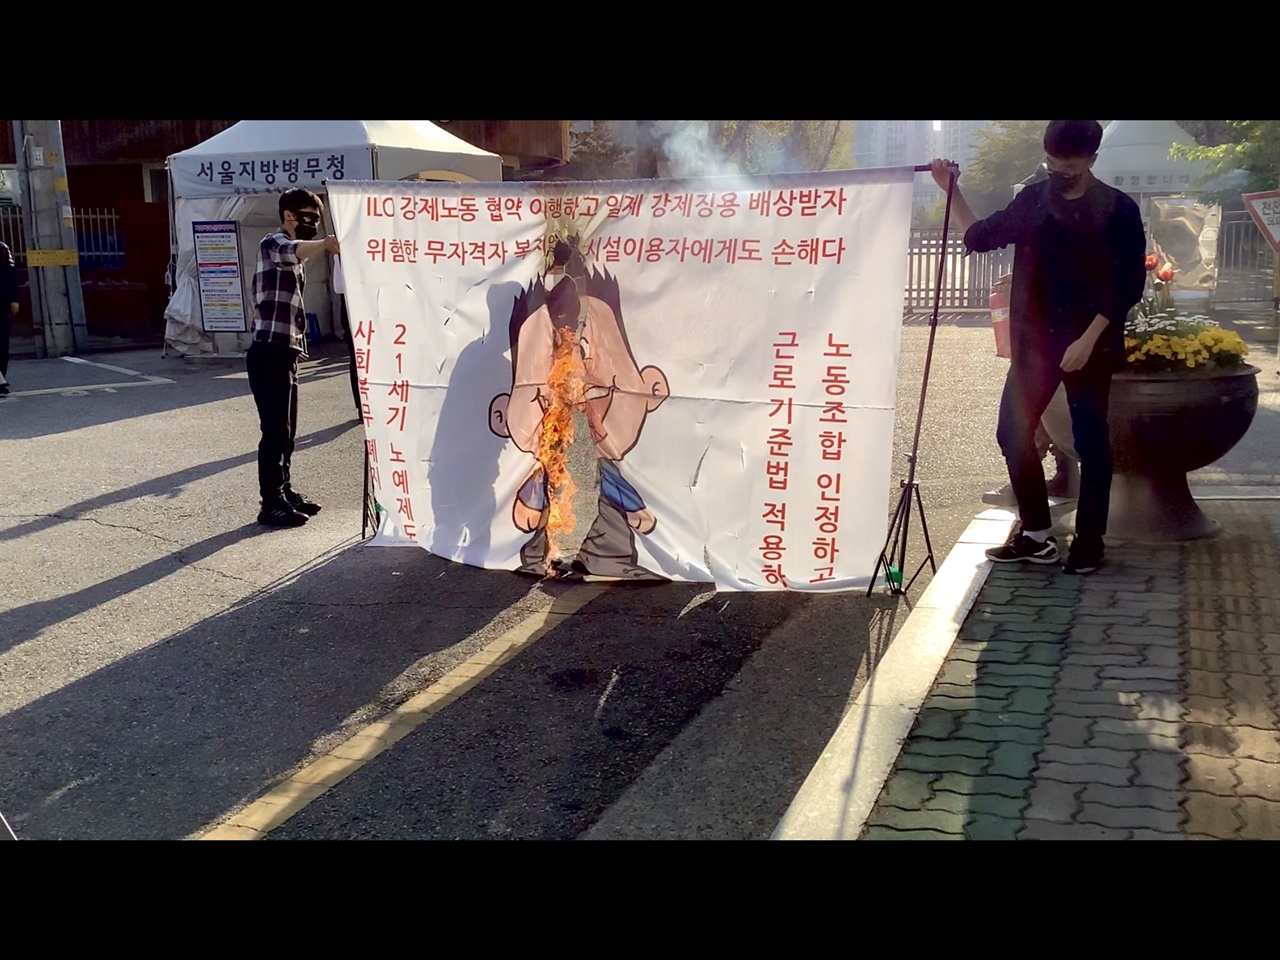 20일, 사회복무요원 노동조합원들이 서울지방병무청 앞에서 굳건이 화형식을 진행하고 있다.